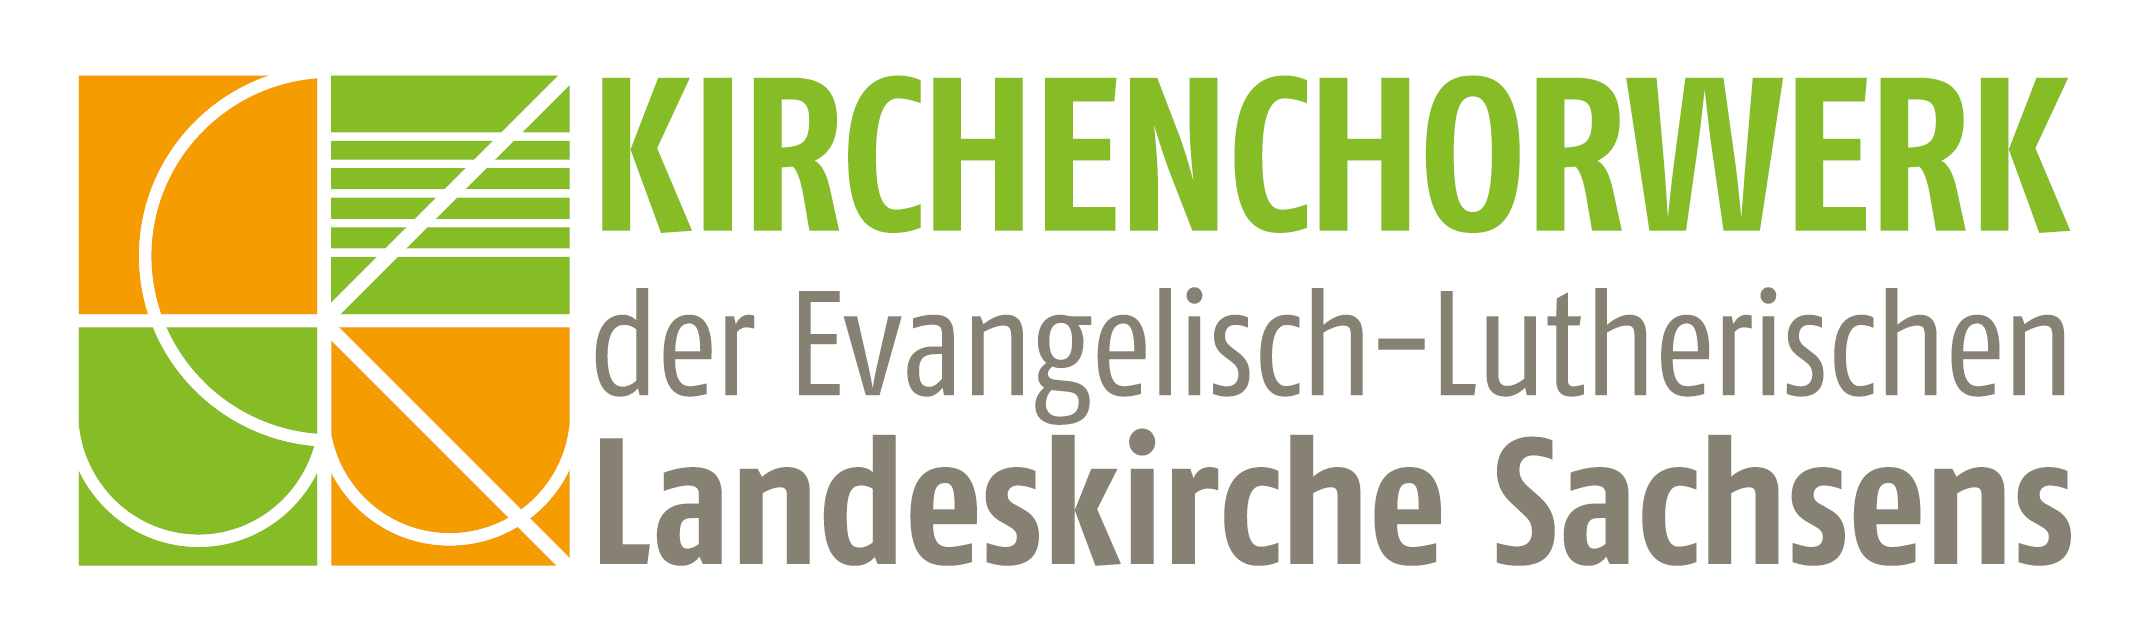 Kirchenchorwerk der Ev.-Luth. Landeskirche Sachsens